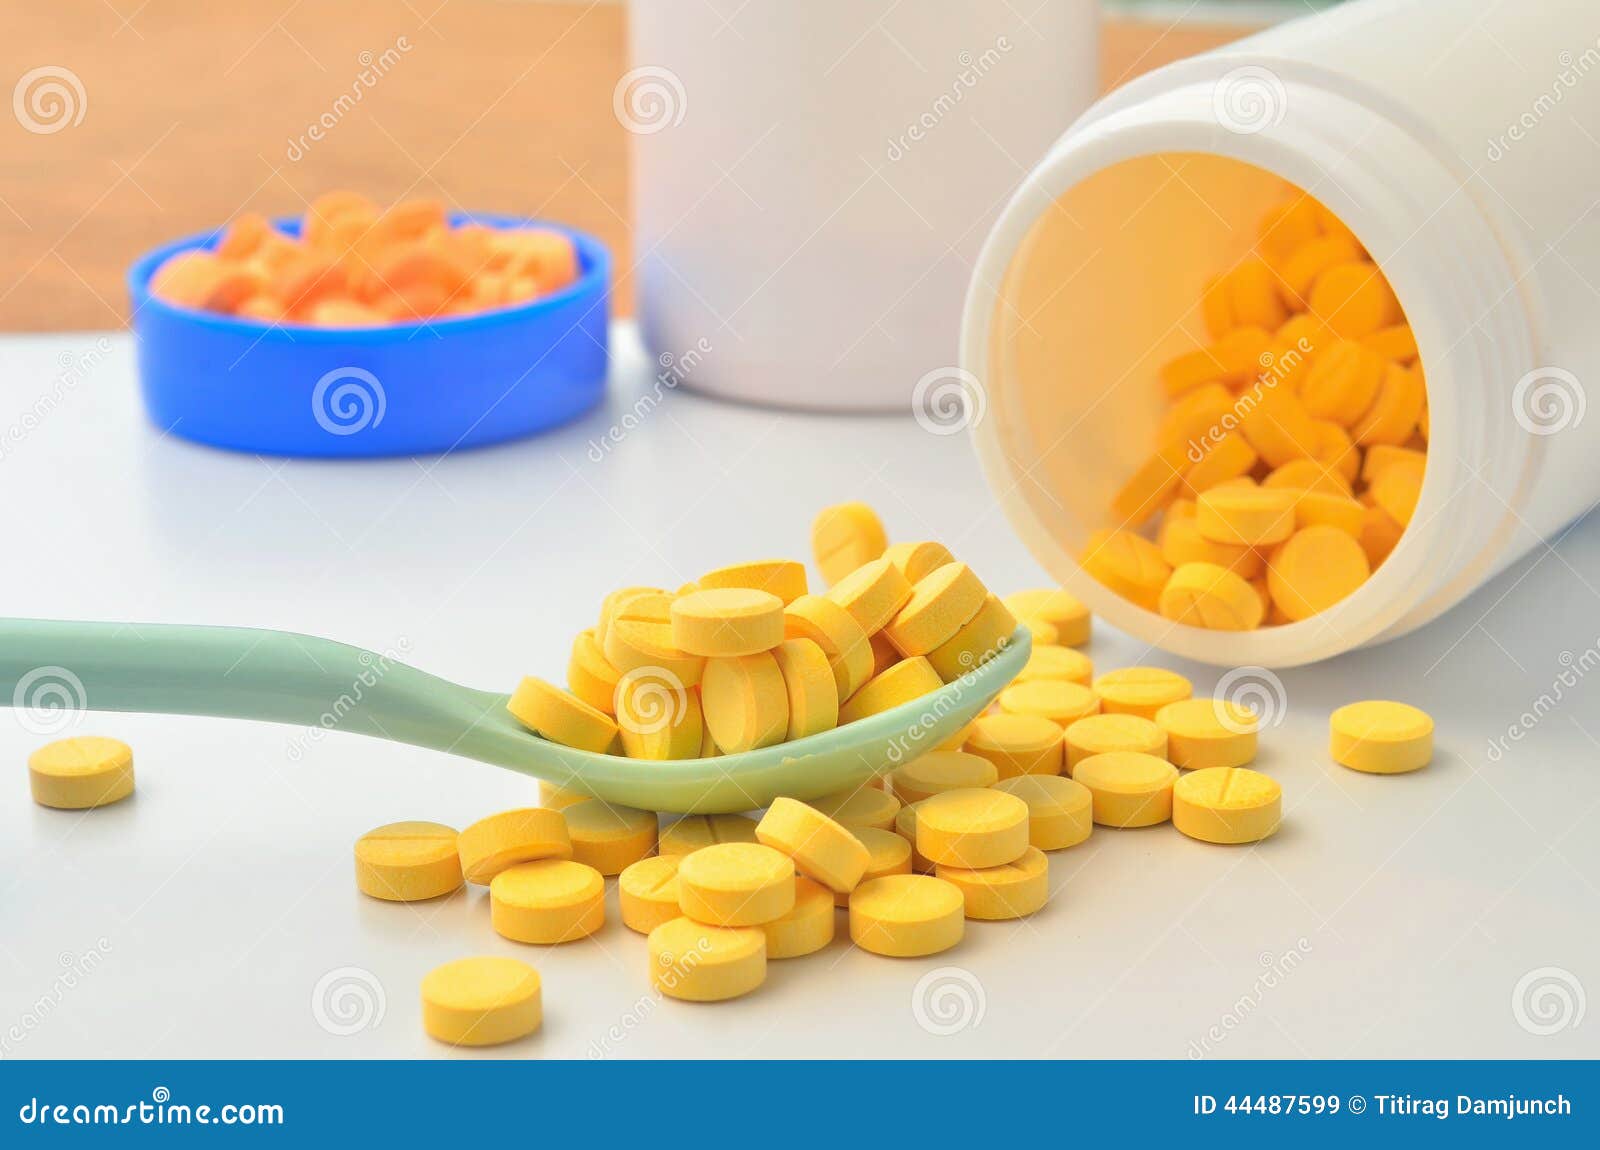 Желтое успокоительное. Желтые таблетки. Желтые таблетки успокаивающие. Желтые маленькие таблетки успокоительные. Желтая пилюля.